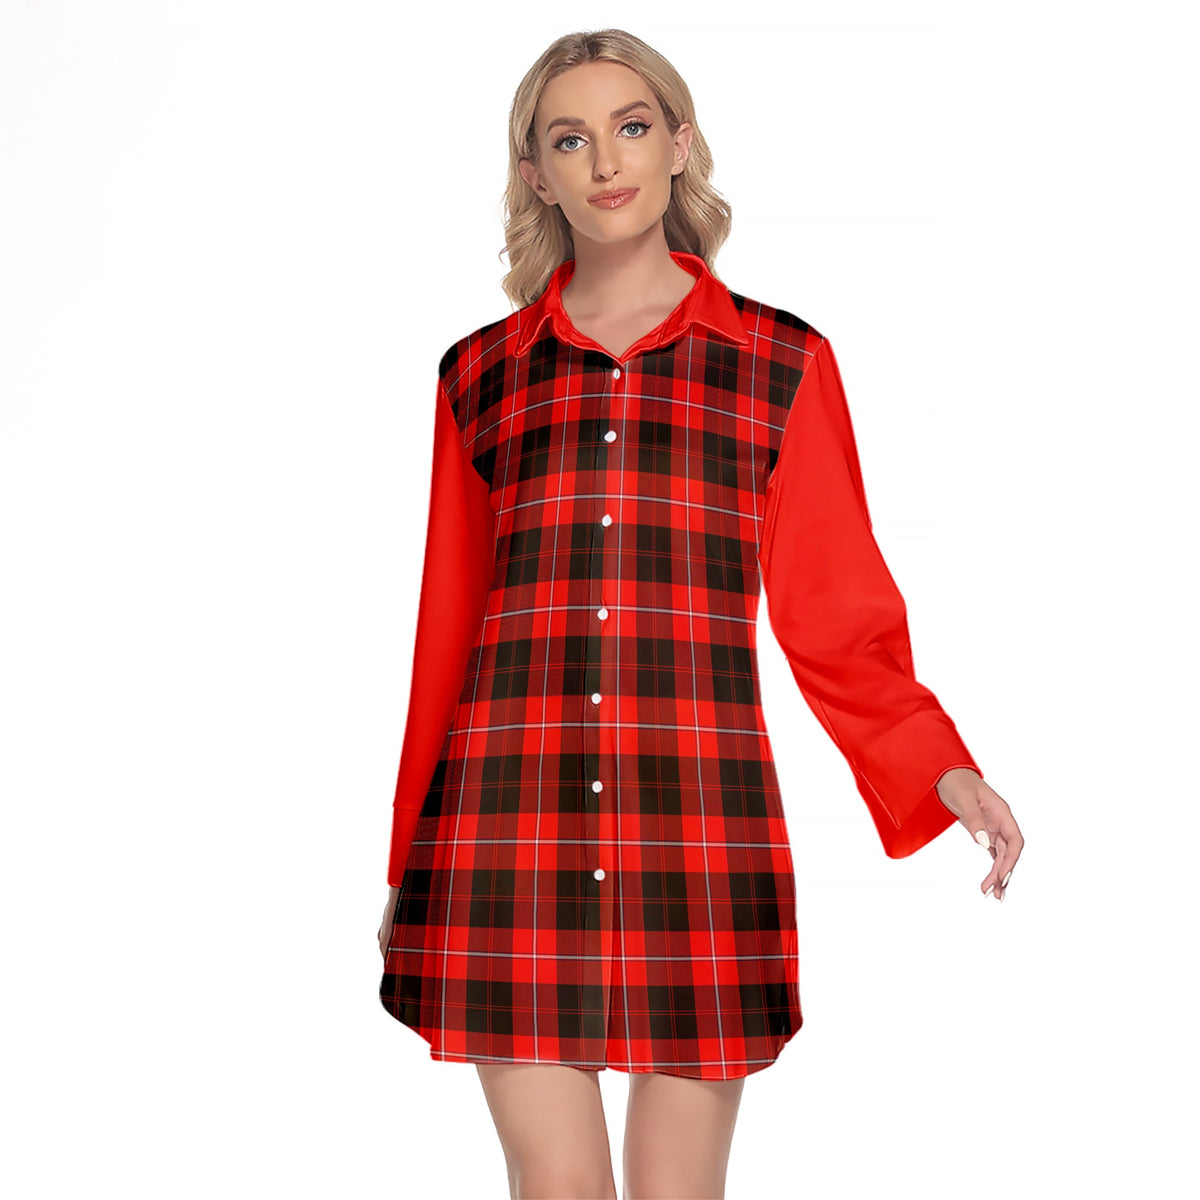 Cunningham Modern Tartan Women's Lapel Shirt Dress With Long Sleeve